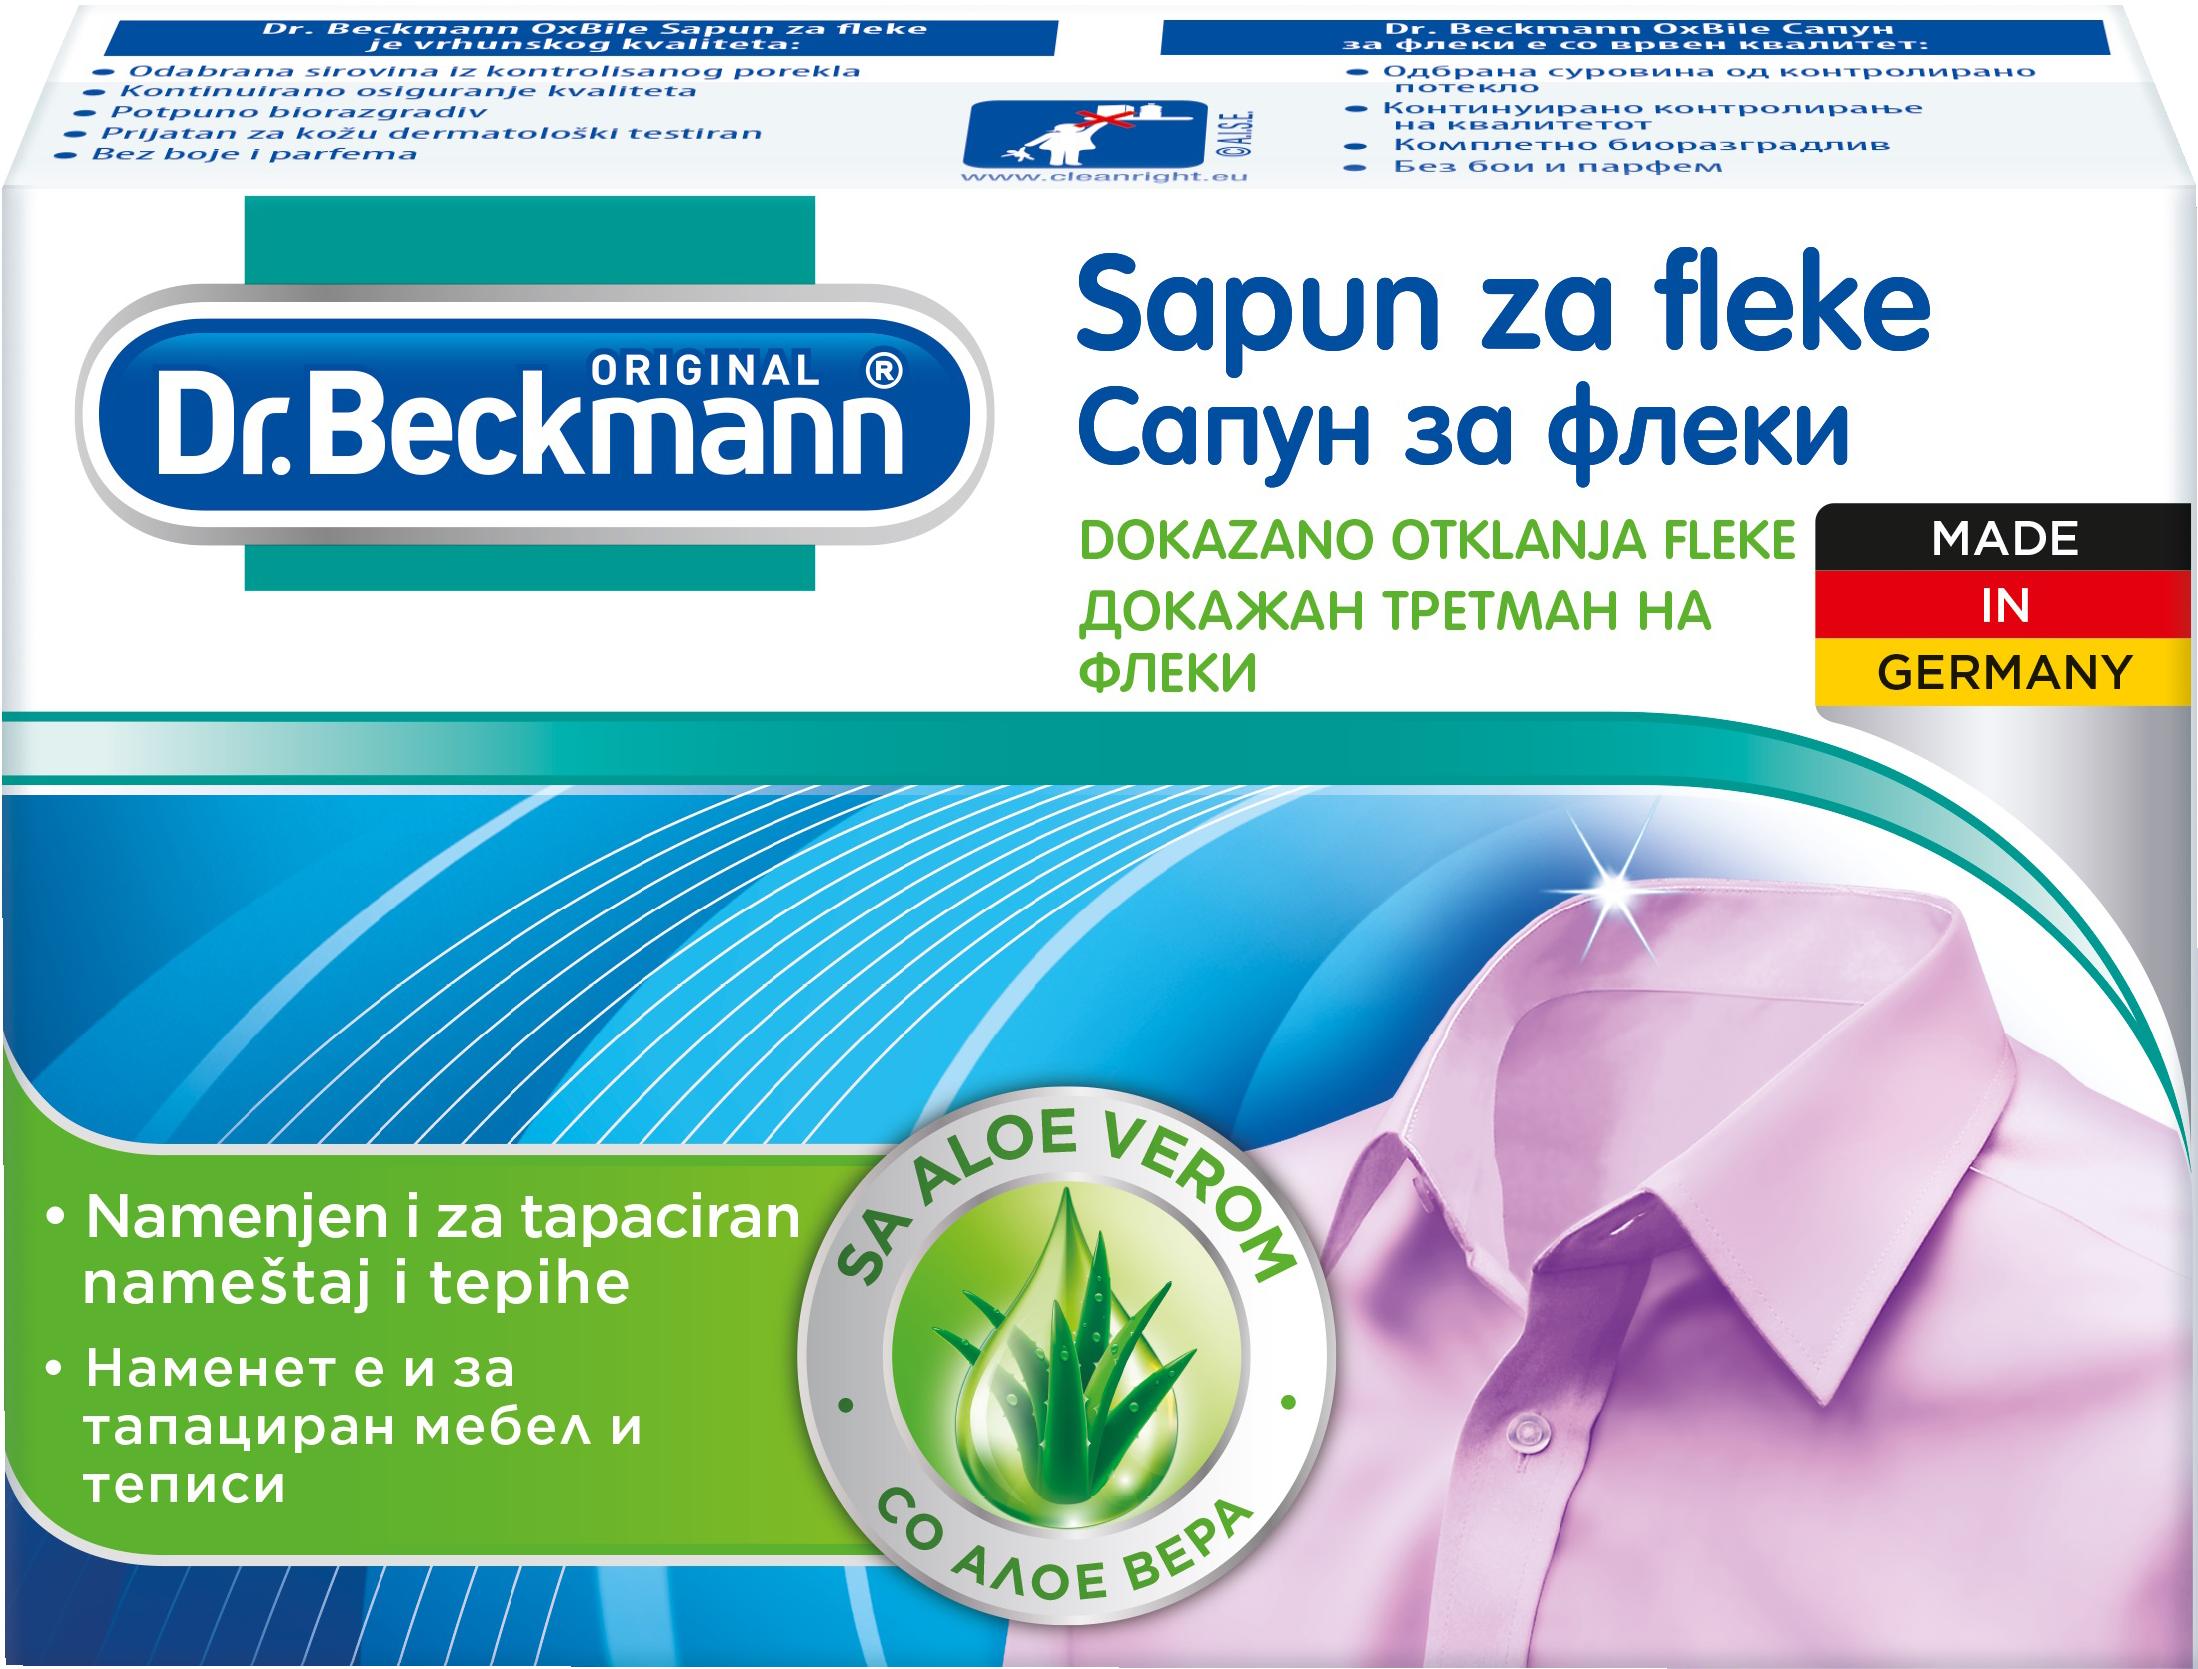 Slika za Sapun za fleke Dr.Beckmann 100g